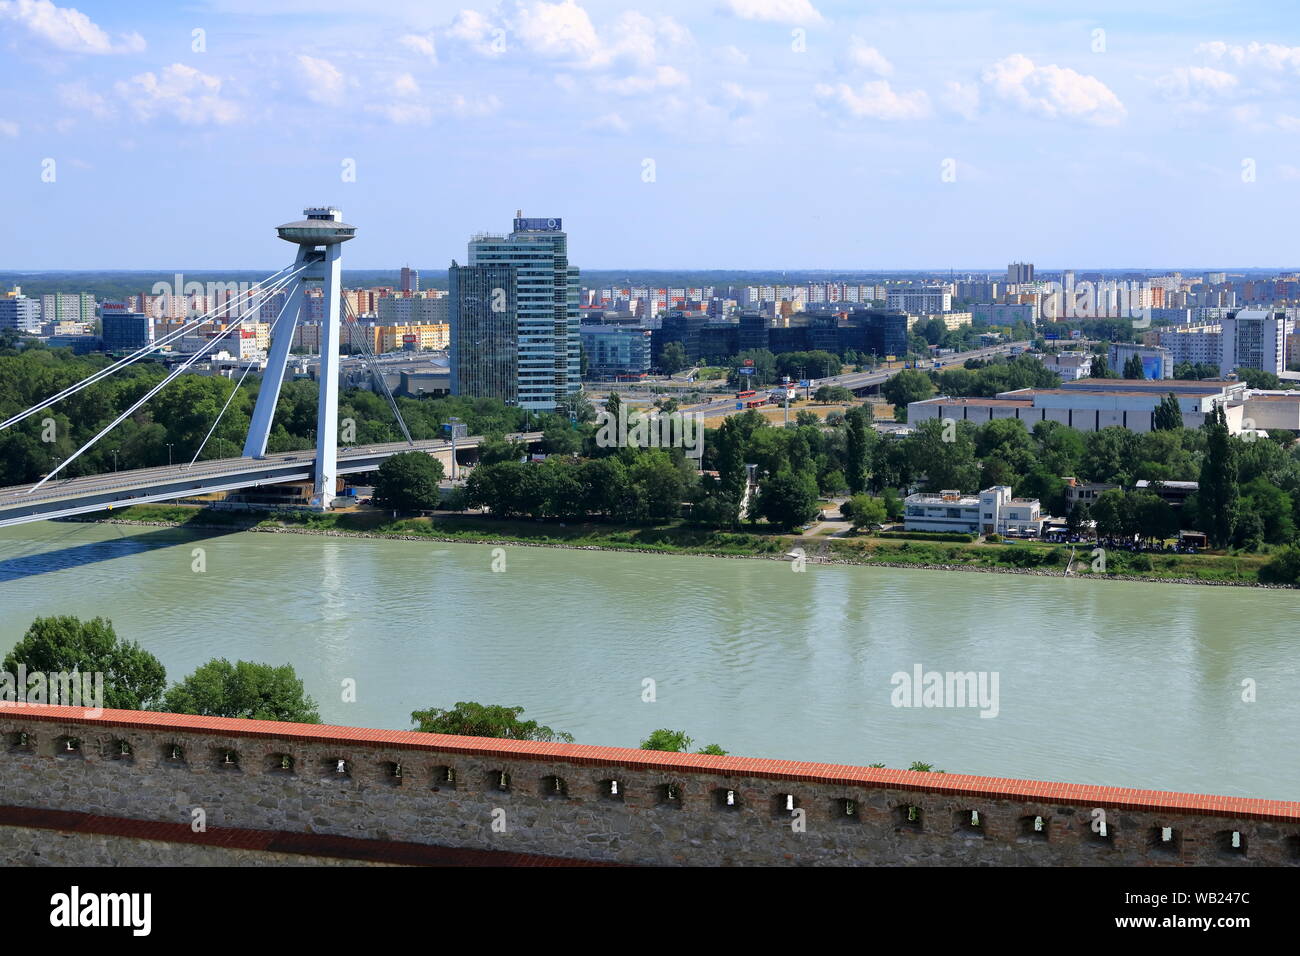 Bratislava, Slovakia, July 18 2019: UFO bridge over Danube river in Bratislava, Slovakia Stock Photo